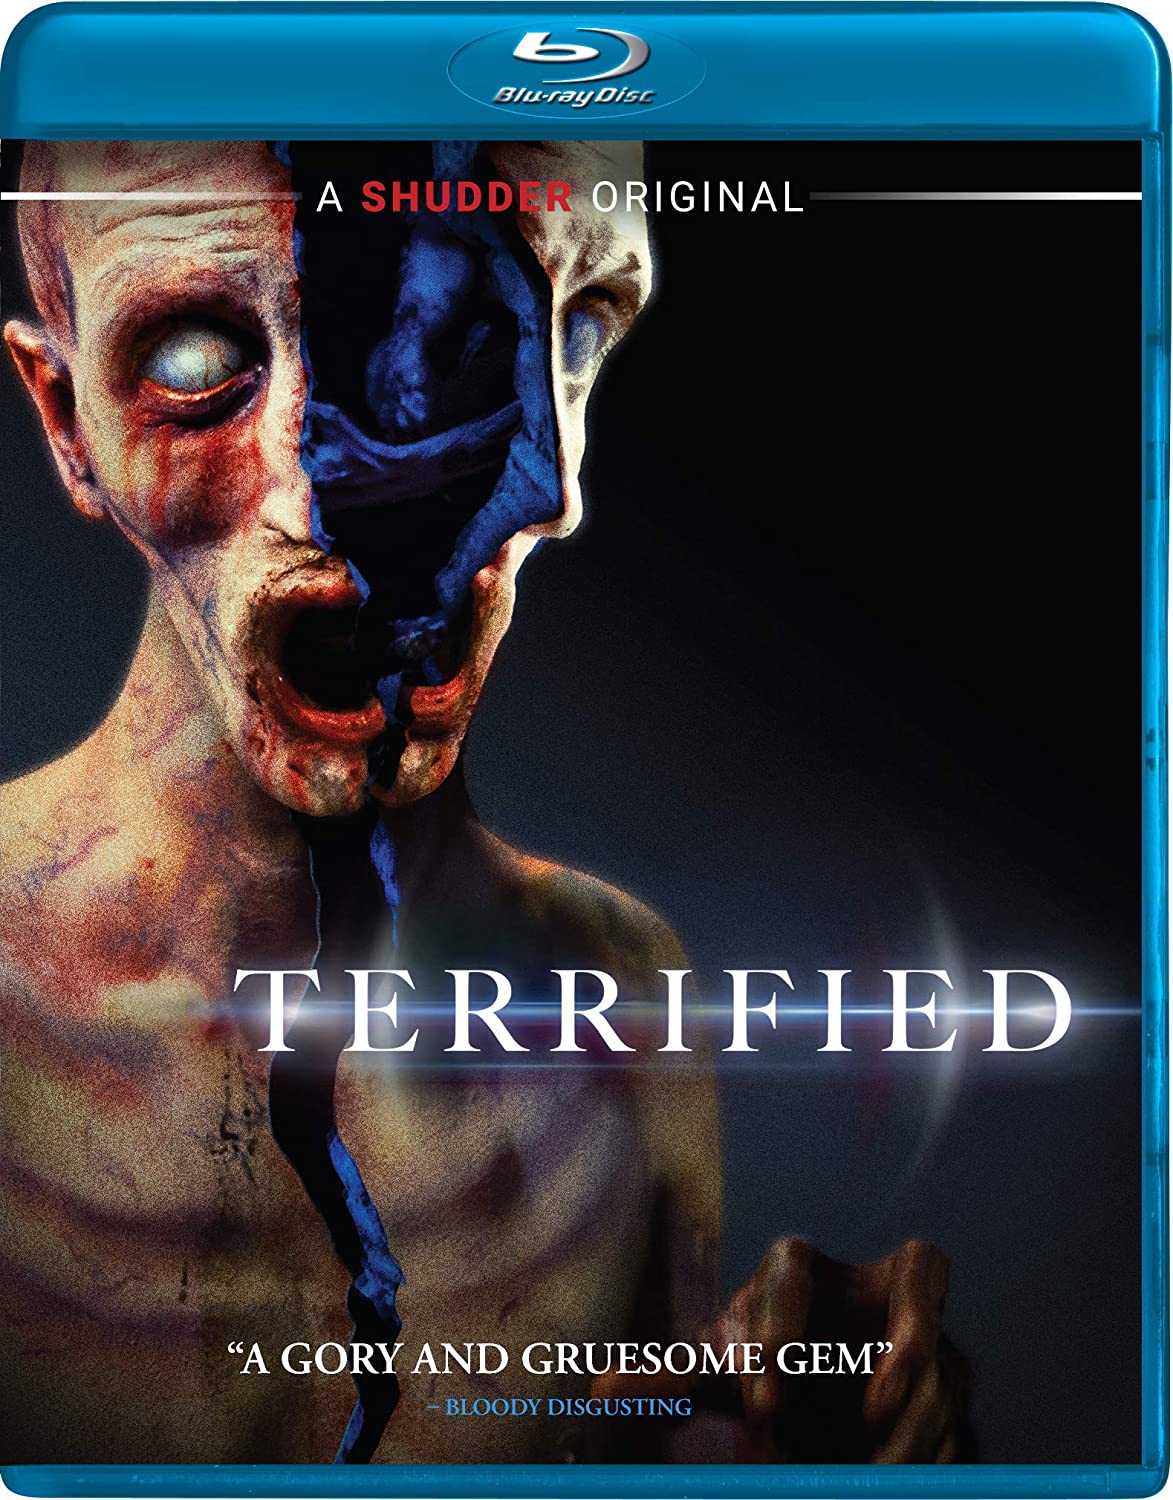 [News] TERRIFIED Arriving on Blu-ray & DVD on September 1